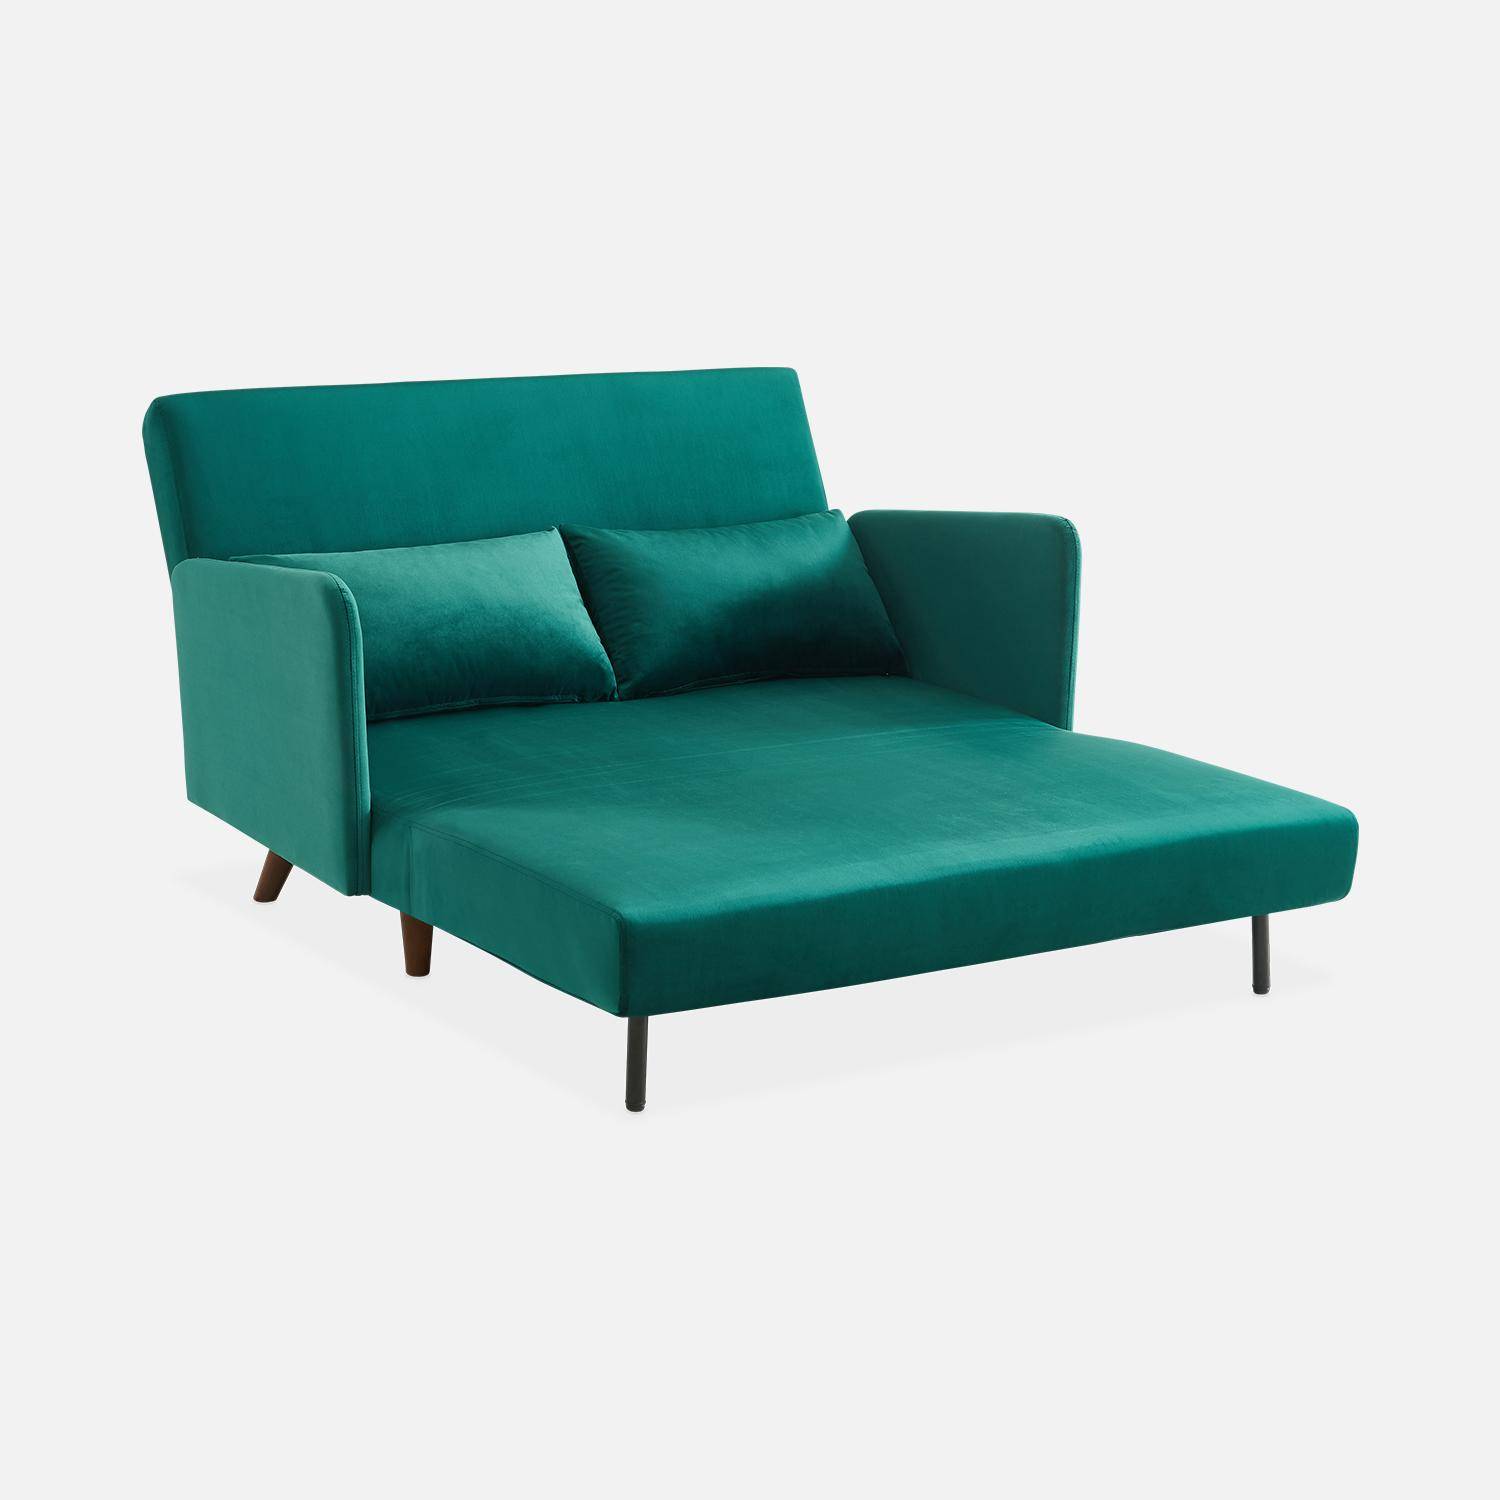 Sofá-cama de terciopelo - Panam - 2 plazas escandinavo, patas de madera oscura, verde, asiento corrido, respaldo reclinable Photo6